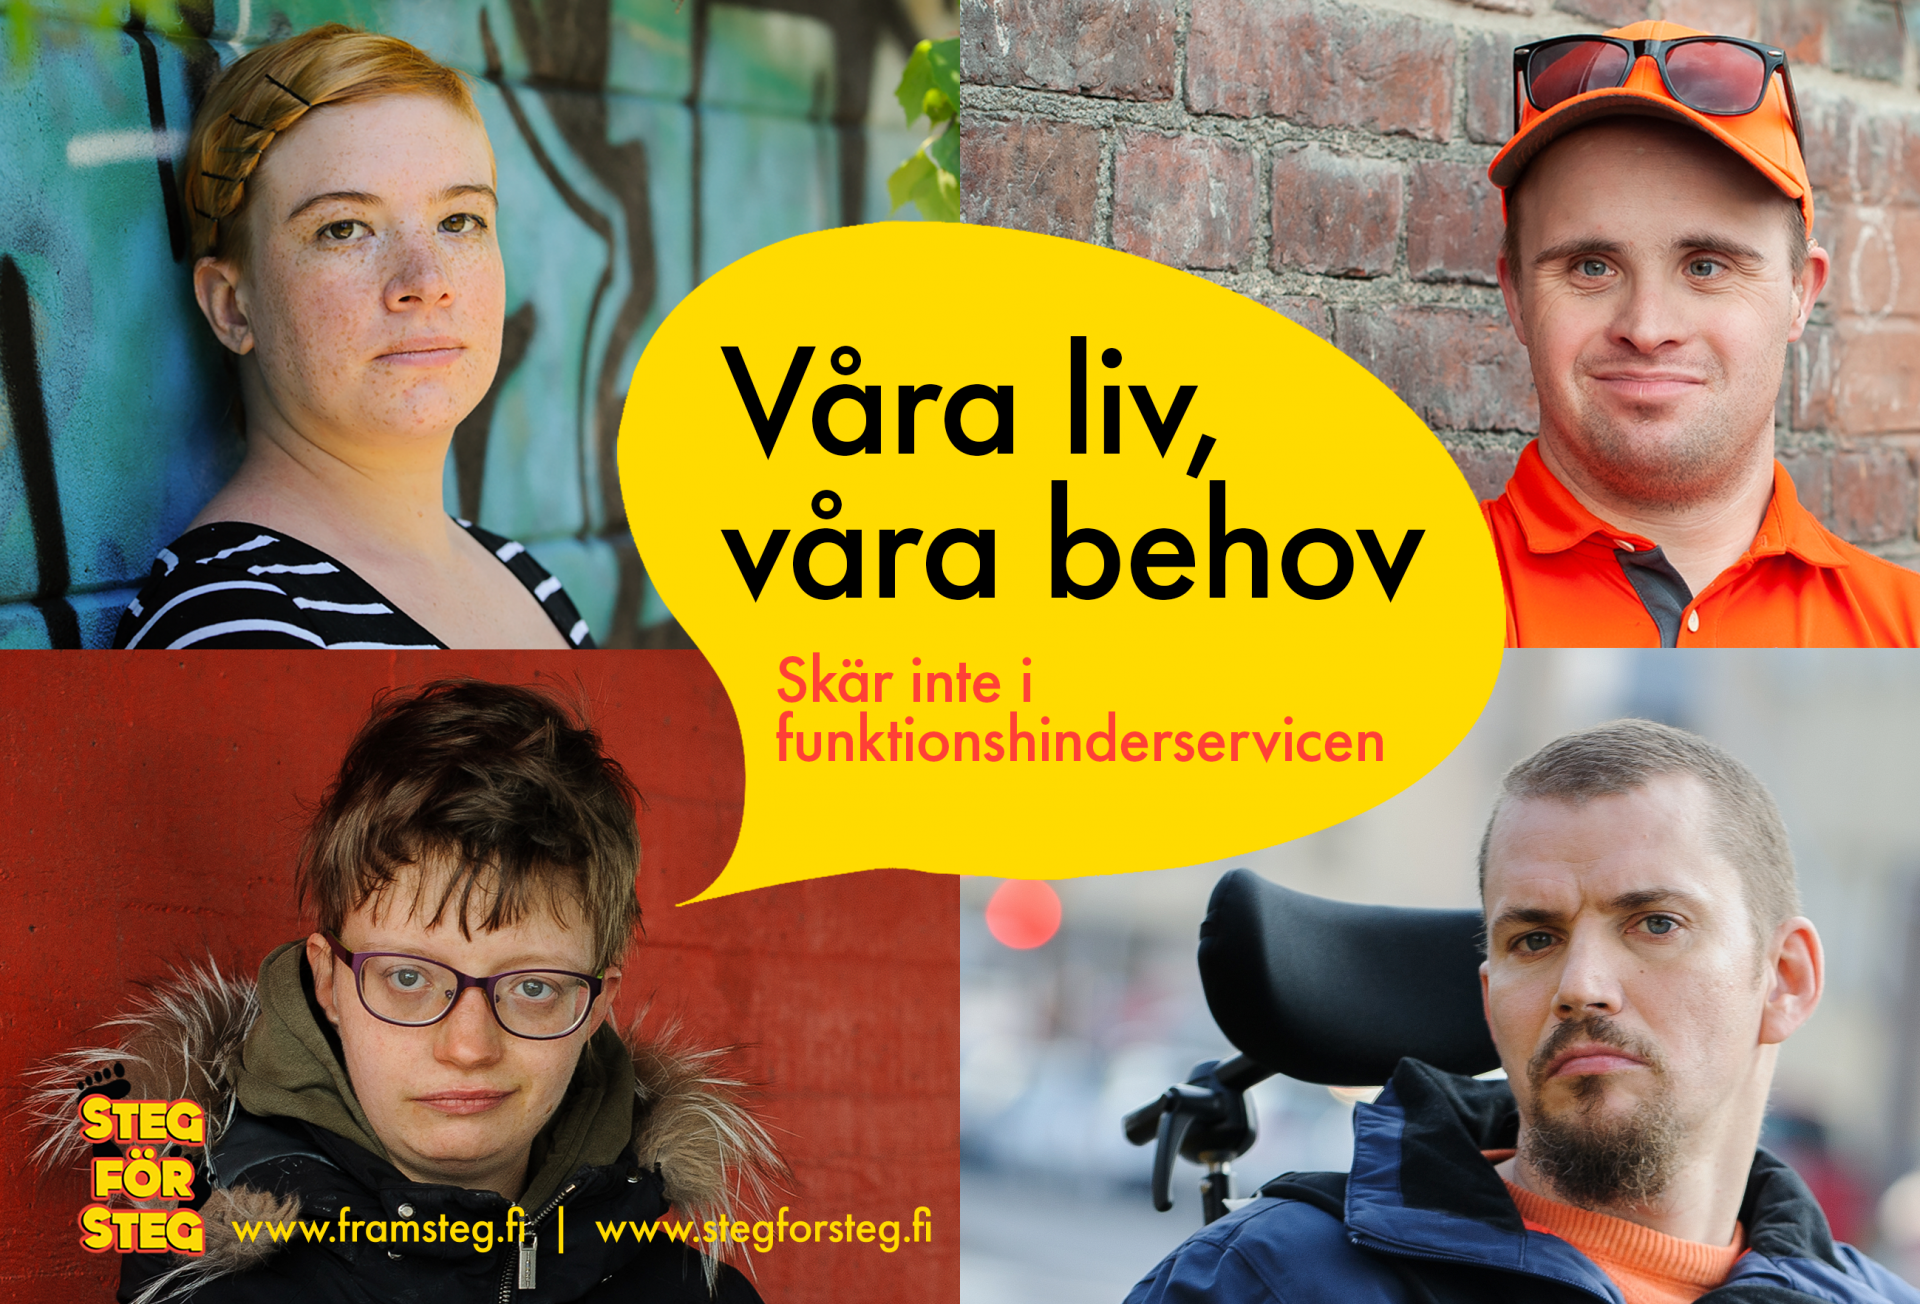 Kampanjbild med fyra ansikten av Steg för Steg medlemmar med en stor pratbubbla i mitten där det står "Våra liv, våra behov! Skär inte i funktionshinderservicen".